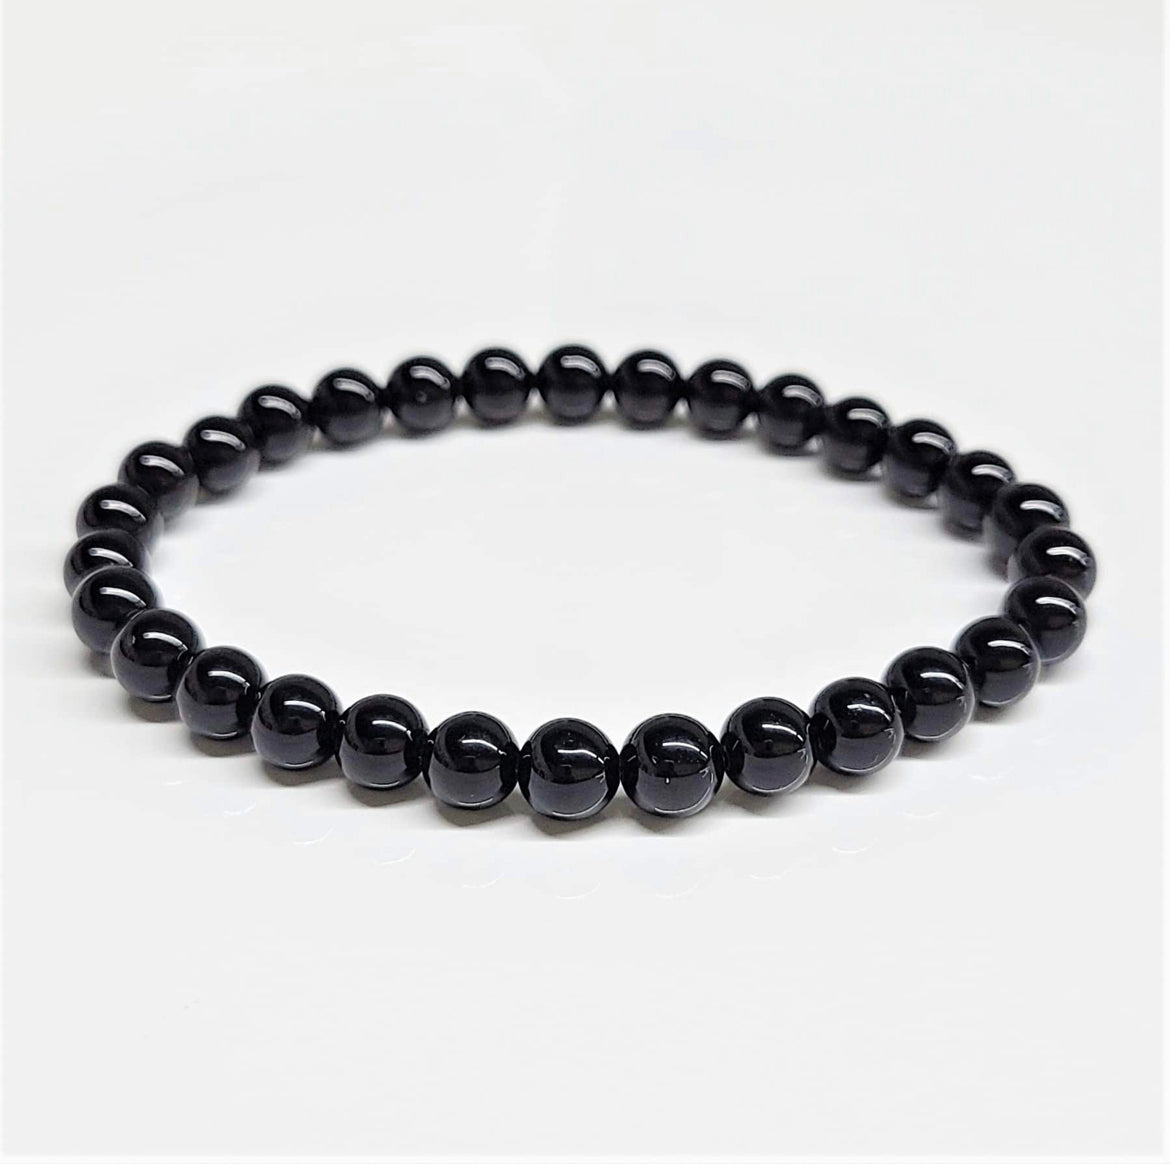 6 mm Obsidian Black Bracelet - Best South Gems